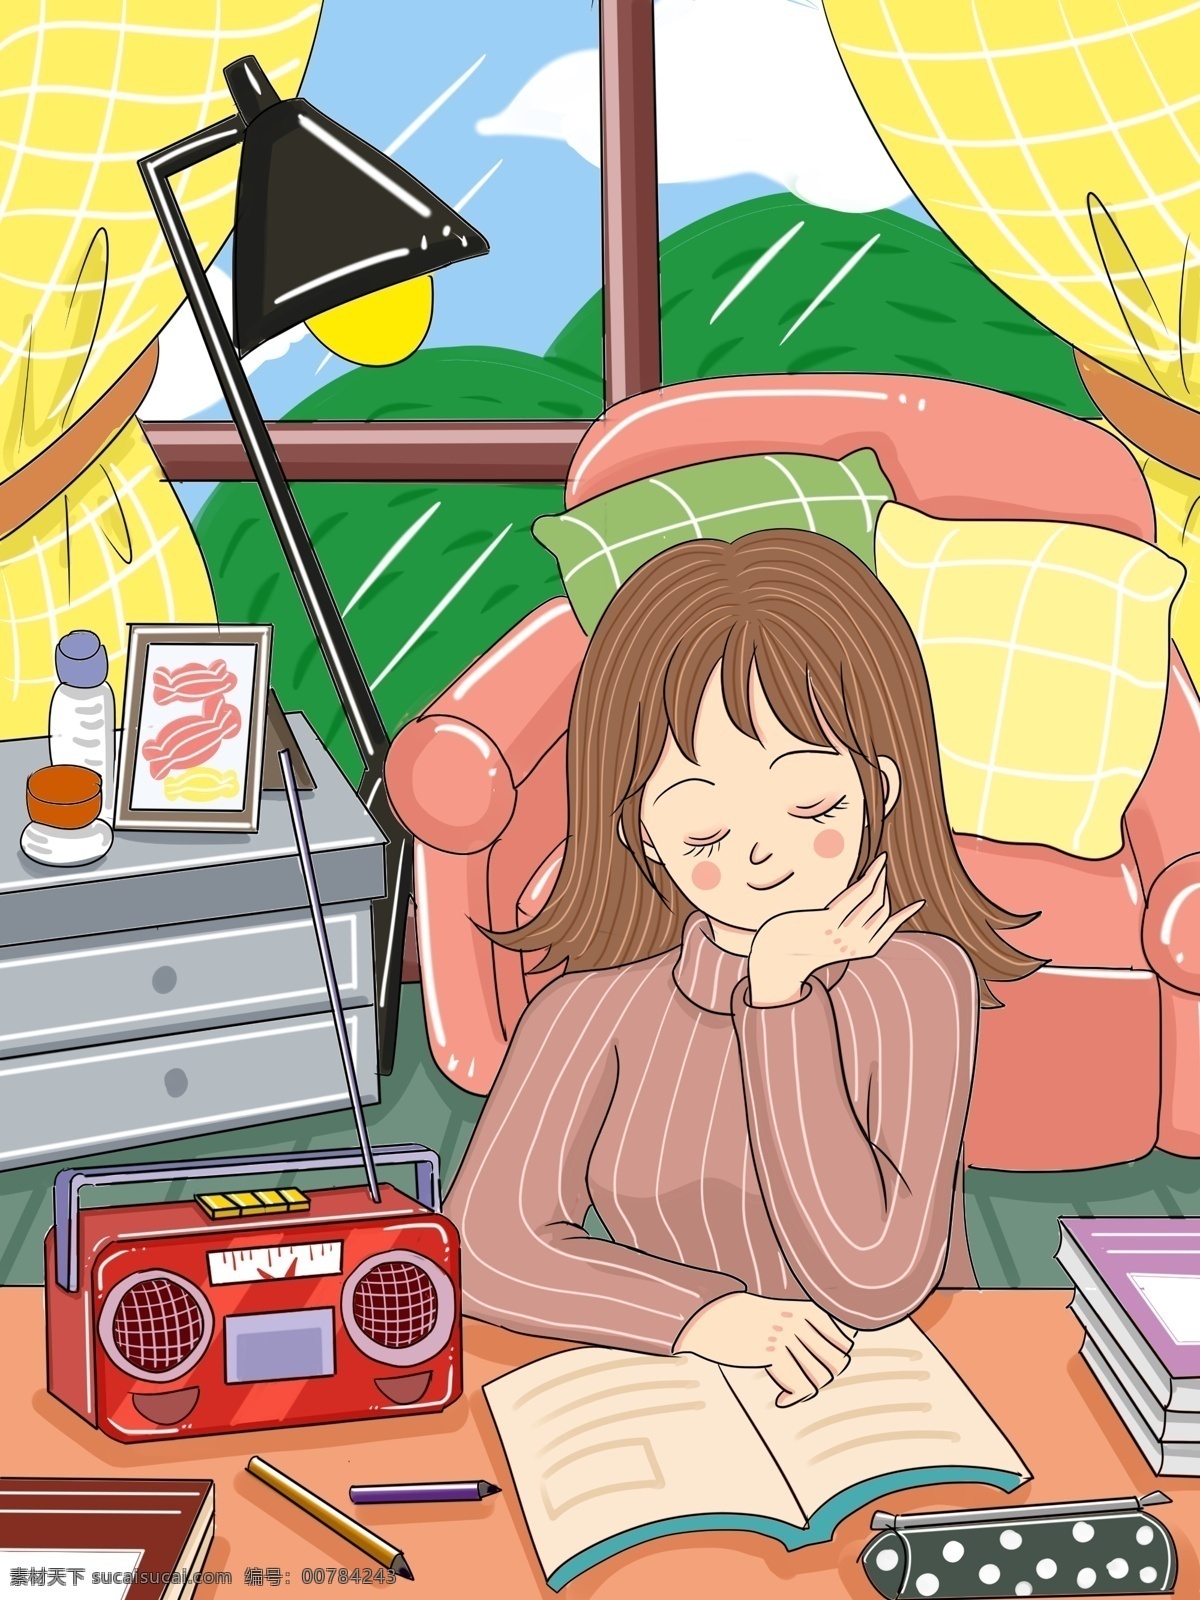 原创 世界 无线电 日 女孩 听 卡通 插画 微博 微信 世界无线电日